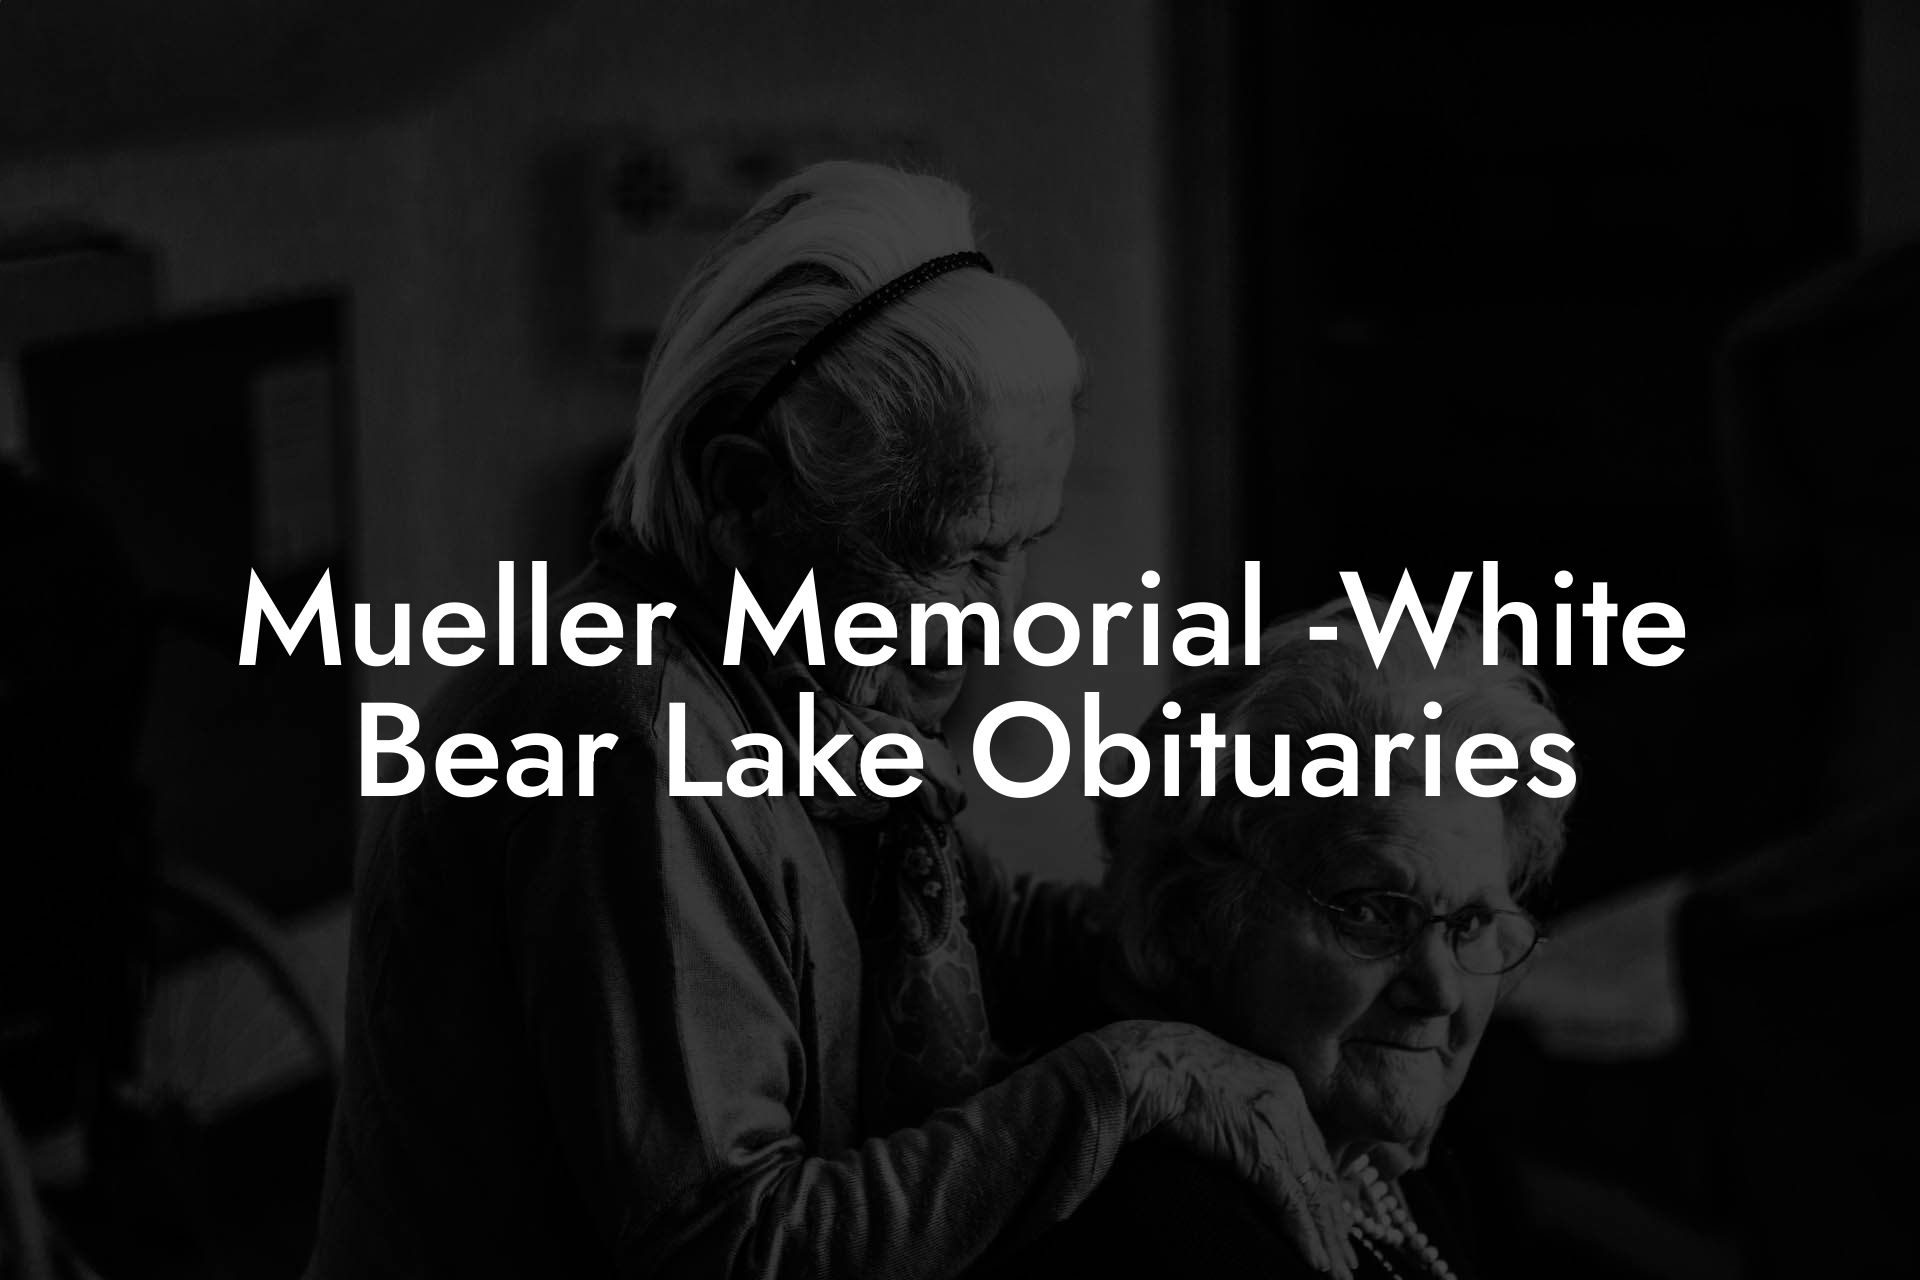 Mueller Memorial -White Bear Lake Obituaries